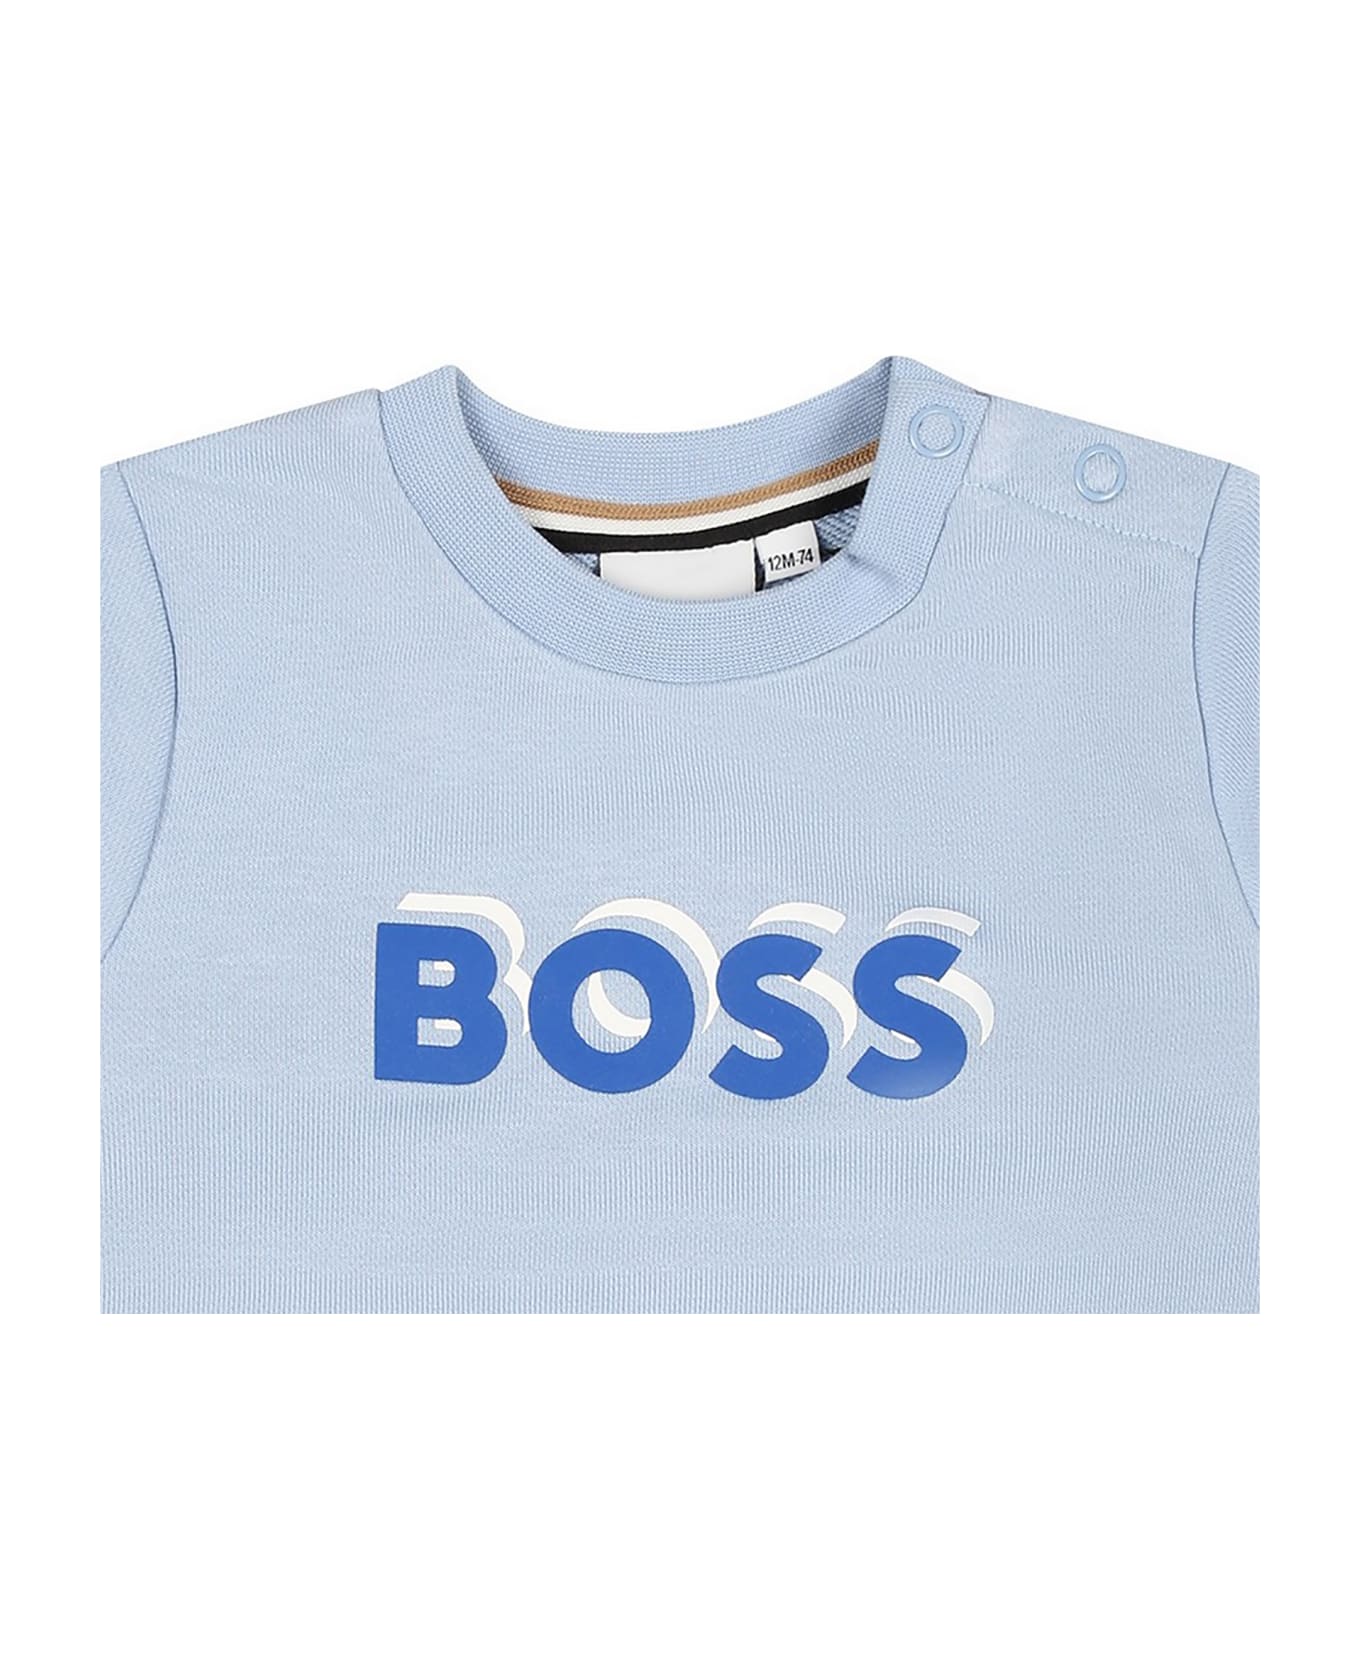 Hugo Boss Round Neck Sweatshirts Celeste - Light Blue ニットウェア＆スウェットシャツ